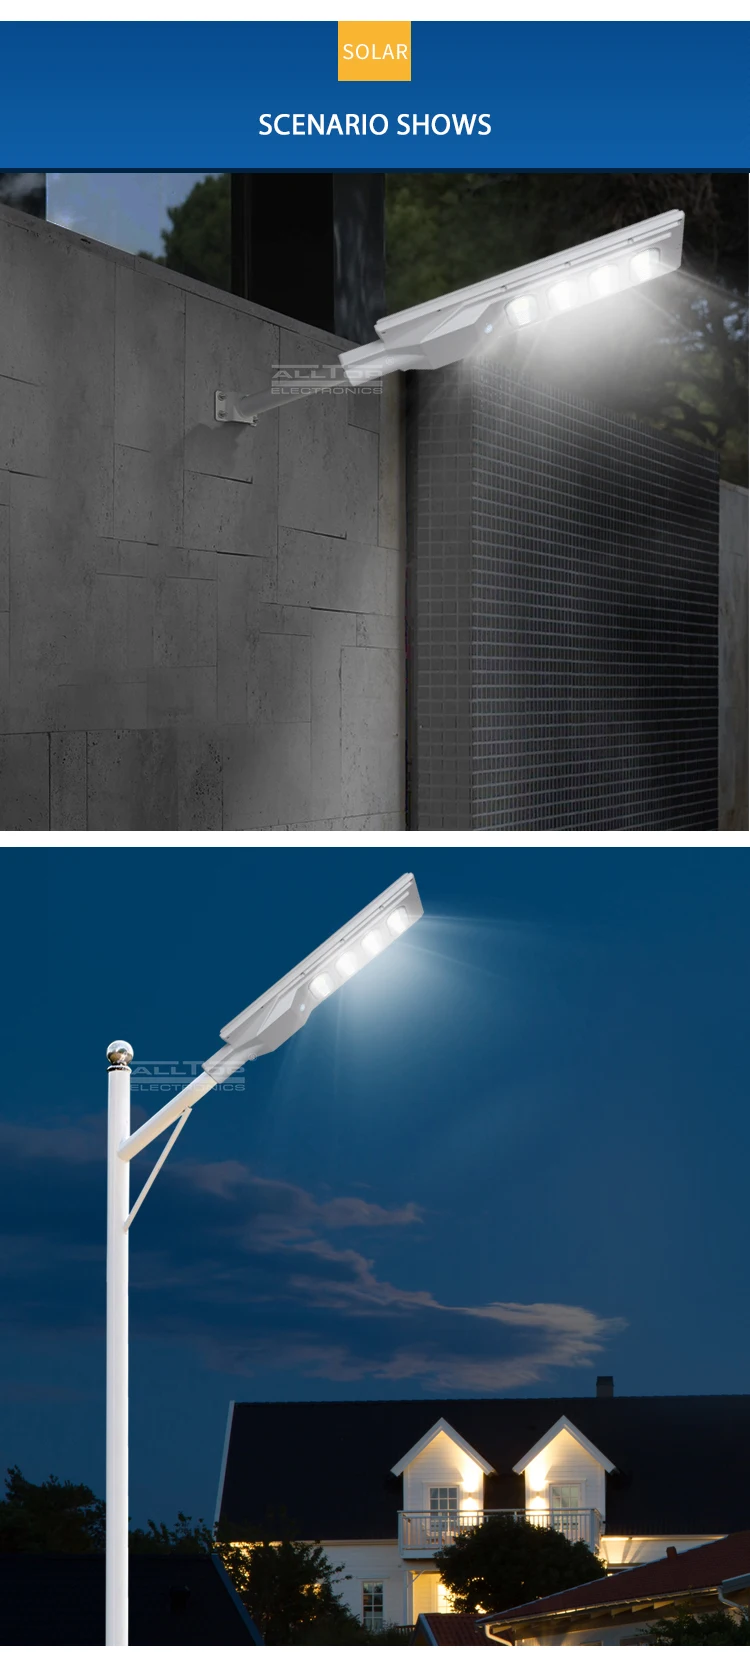 ALLTOP High lumen outdoor lighting IP67 waterproof bridgelux SMD 30w 60w 90w 120w 150w all in one solar led street light